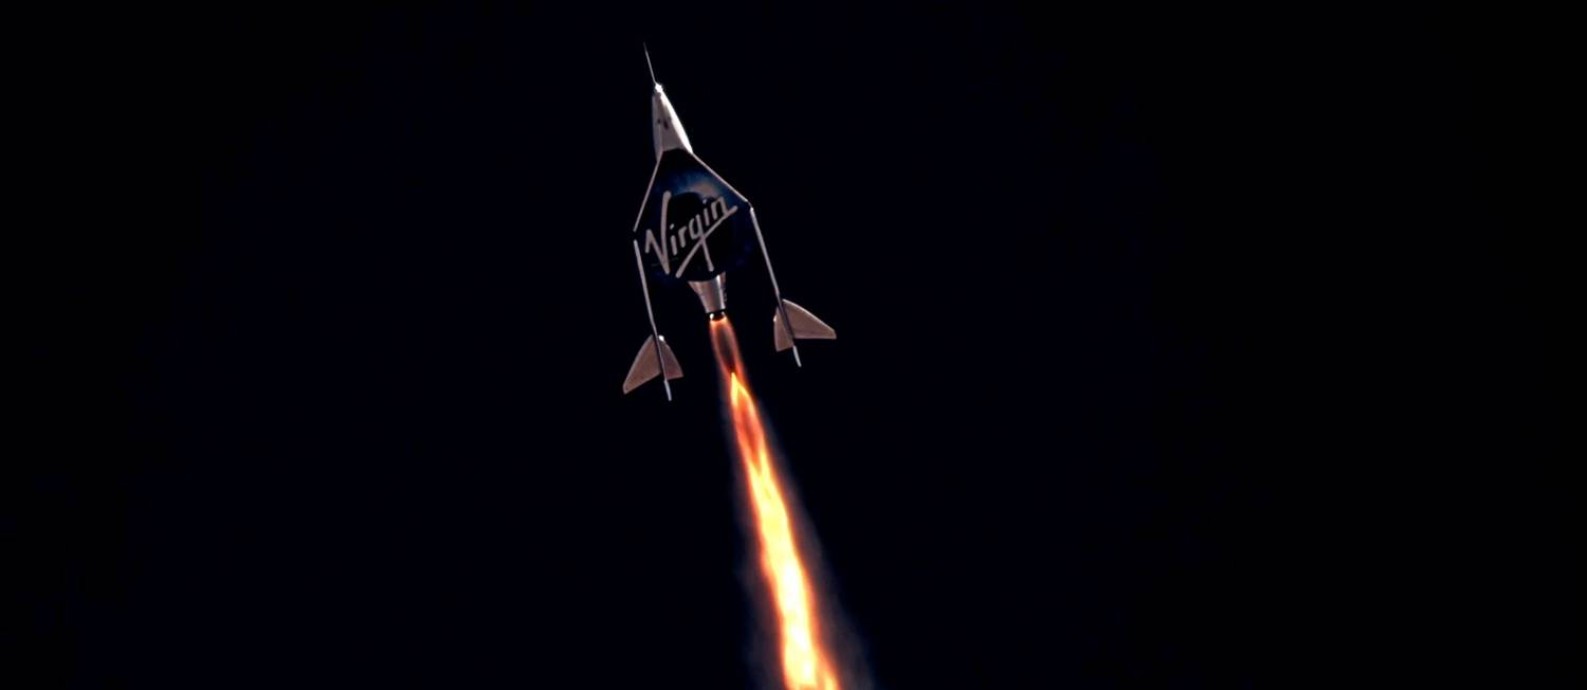 Espaçonave da Virgin Galactic em direção ao espaço: empresa que iniciar operação comercial regular até o fim deste ano Foto: VIRGIN GALACTIC / via REUTERS